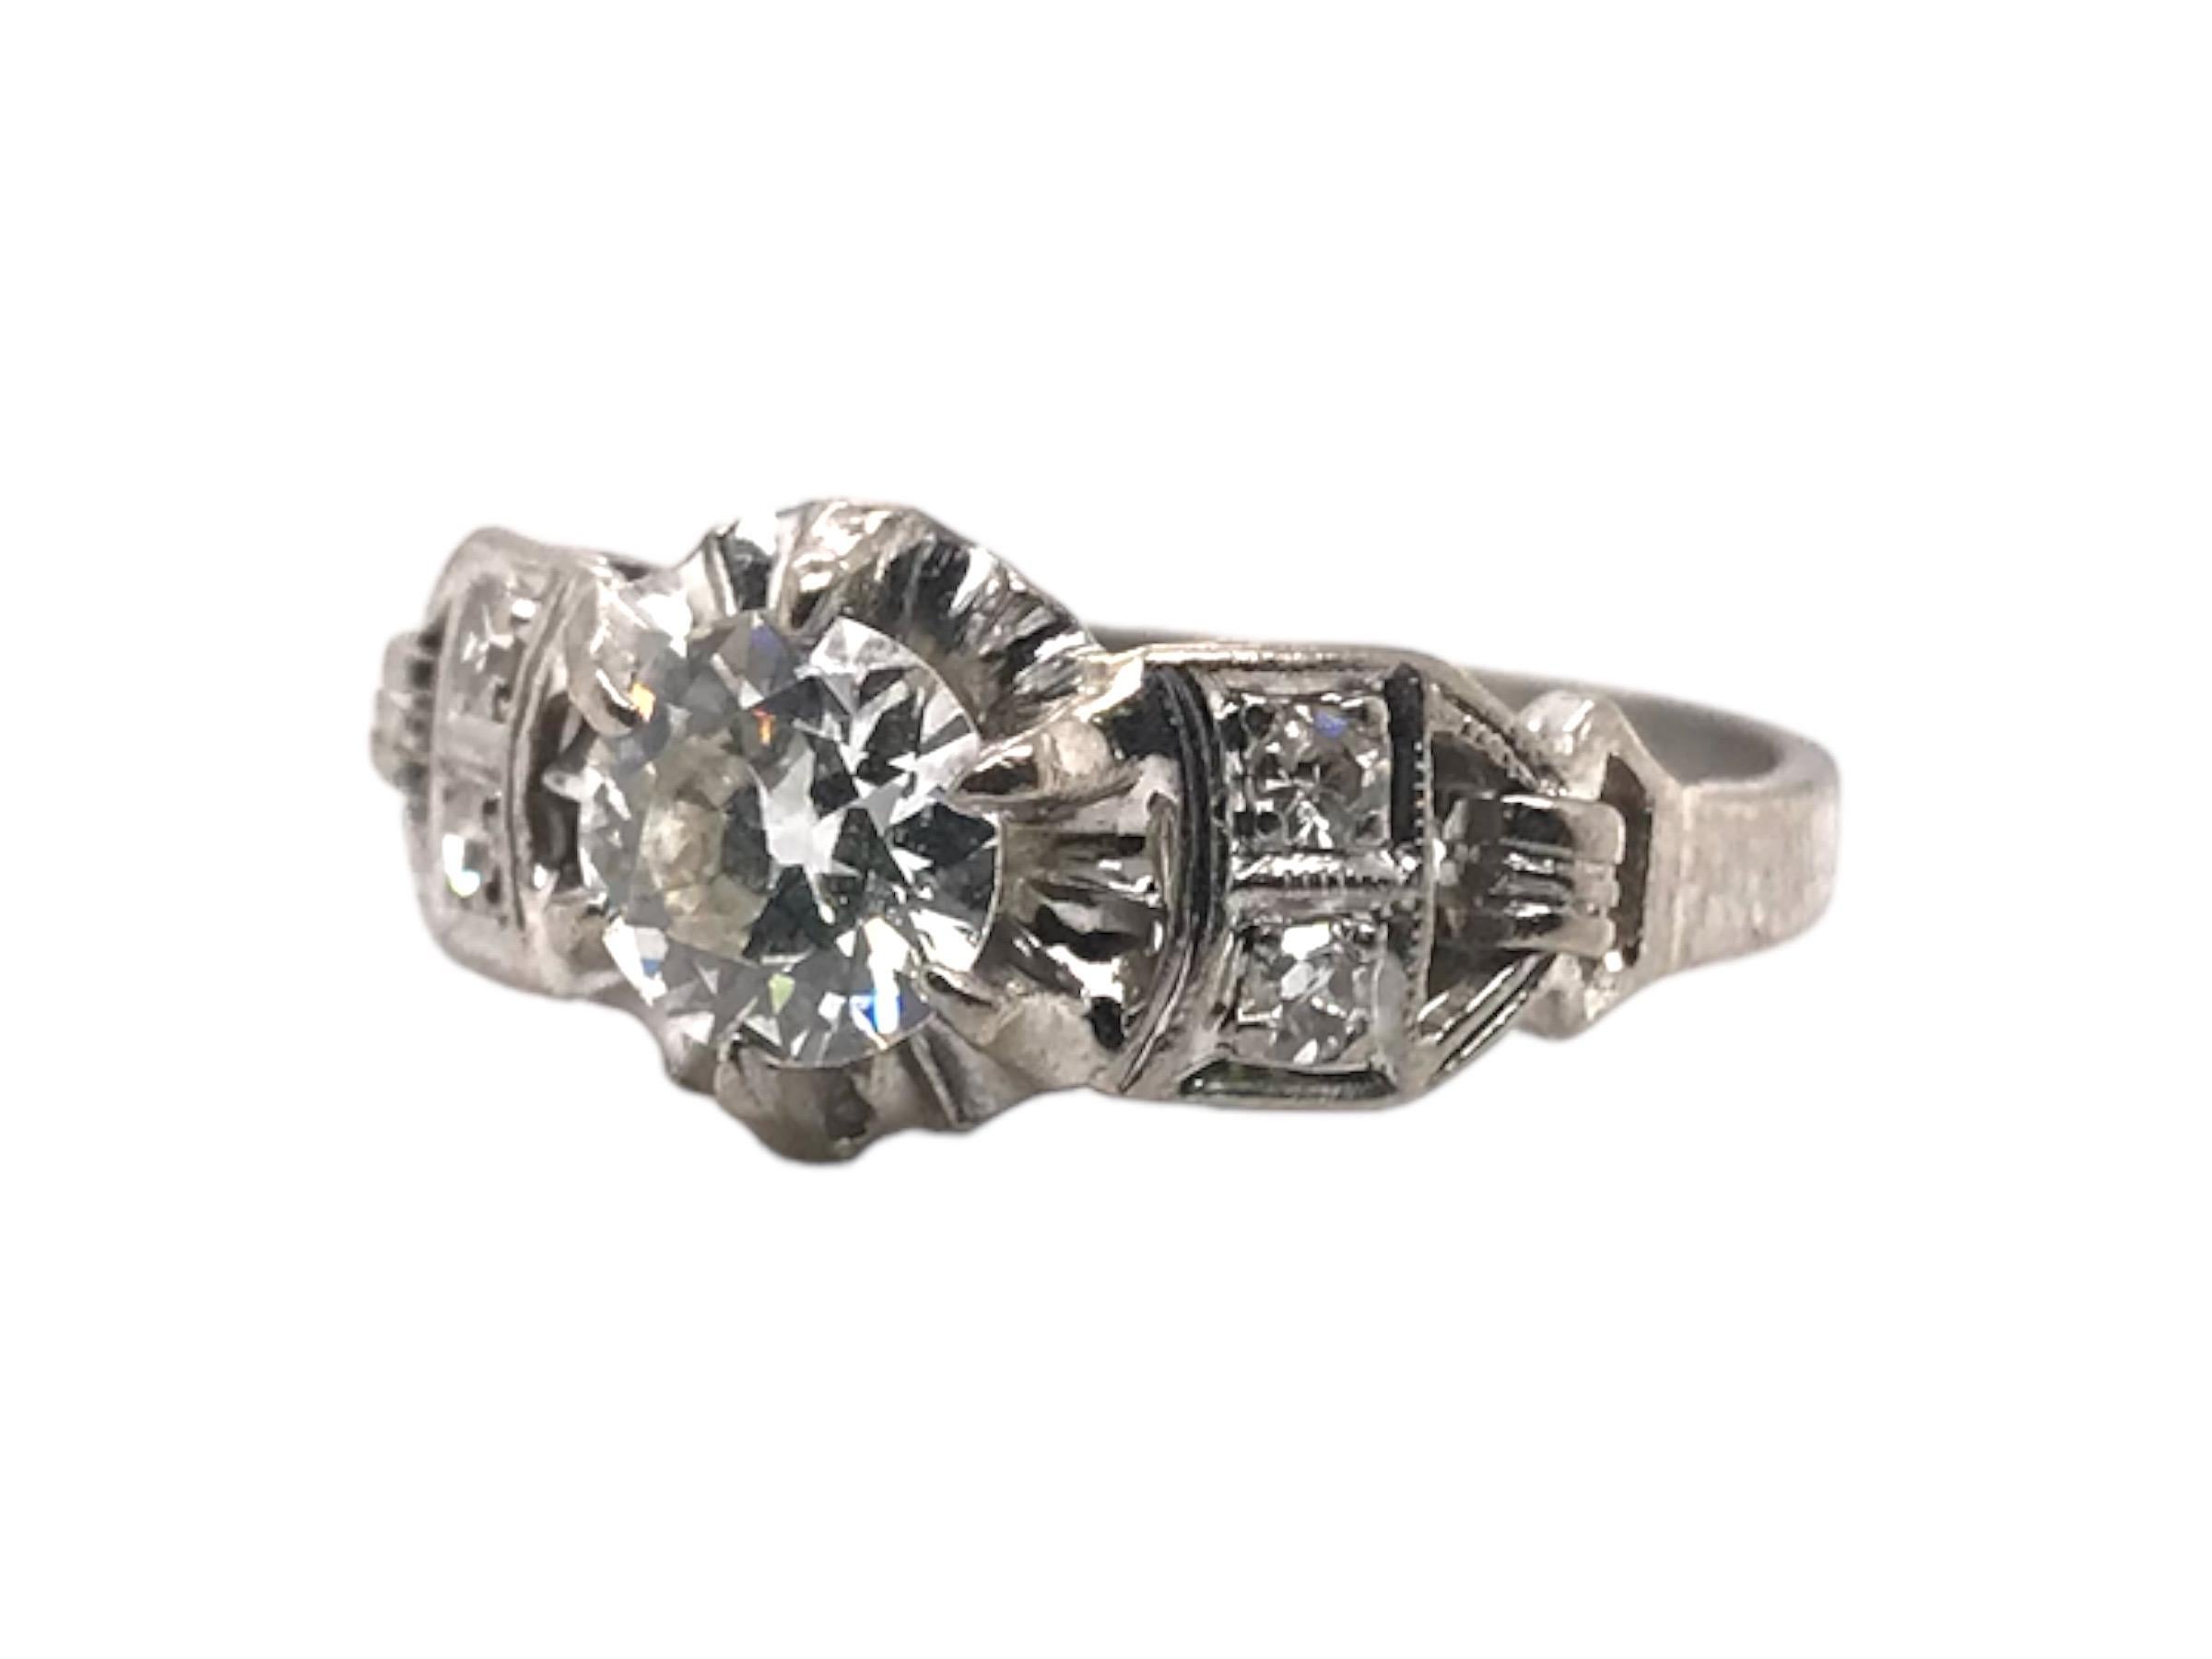 Wir sind verliebt in diese Vintage-Variante eines klassischen Solitärs.
Dieser reizende Ring ist mit einem atemberaubenden Diamanten im Altminenschliff (ca. 0,7 Karat) versehen, der in einen Butterblumenkopf eingefasst ist und dem Mittelstein einen